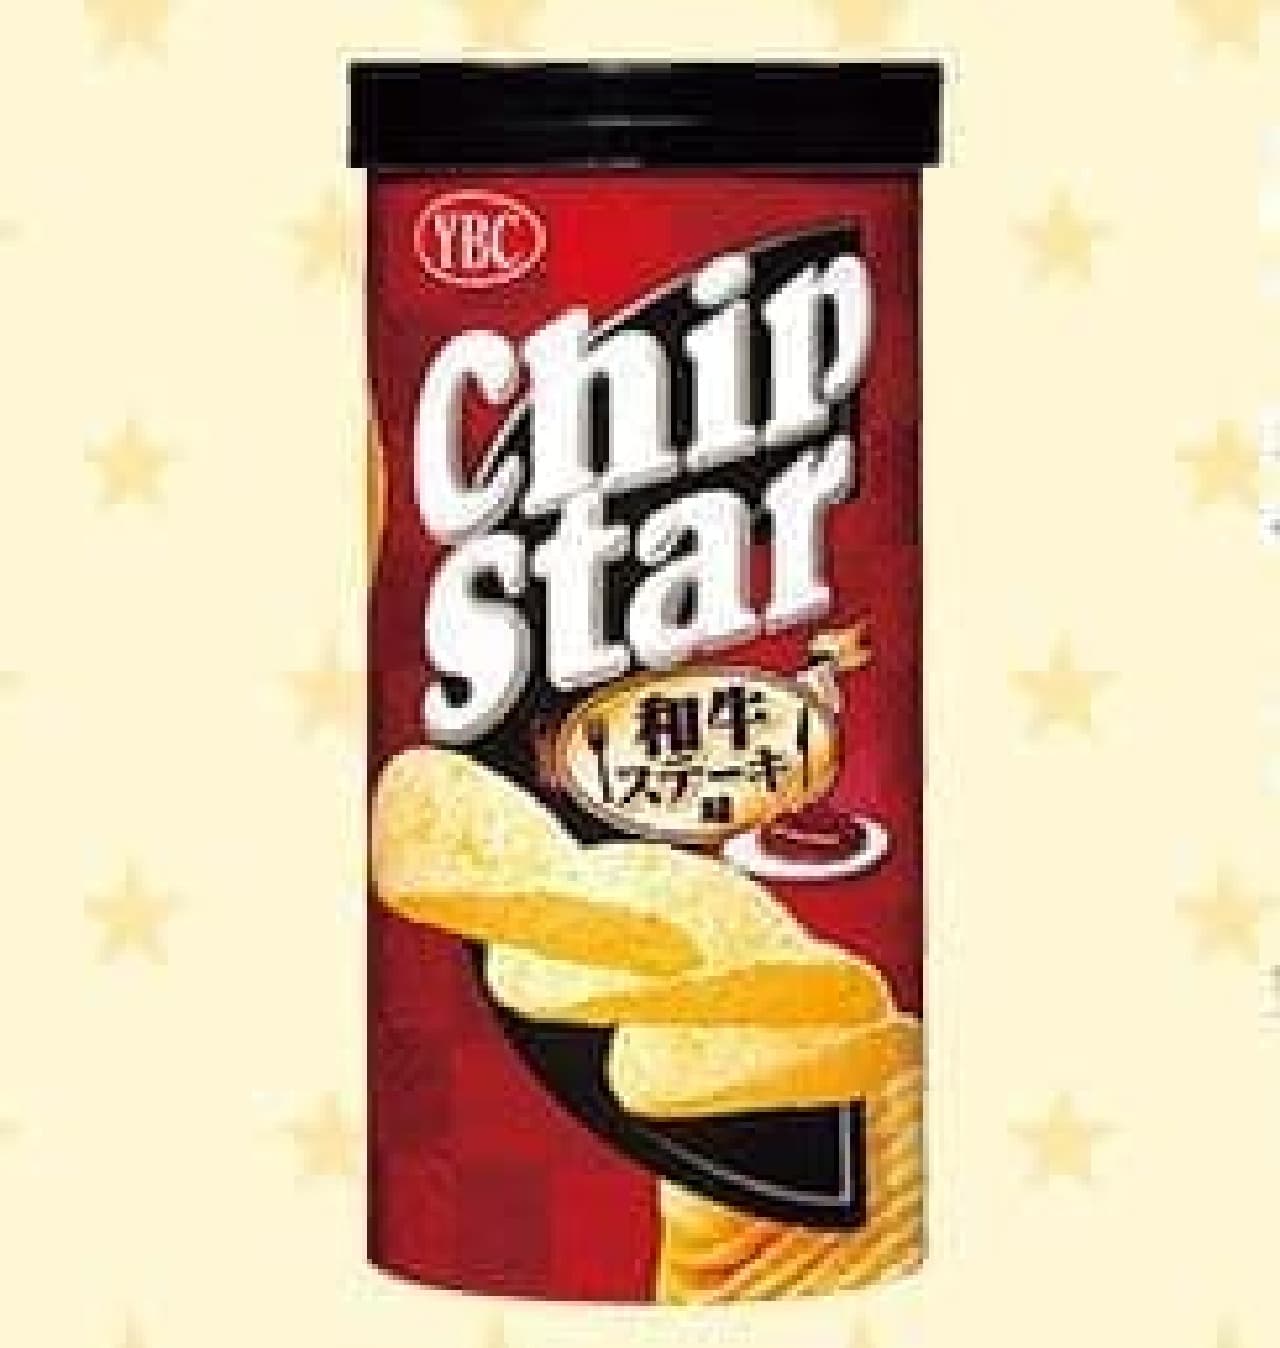 Yamazaki Biscuits "Chip Star S Wagyu Steak Flavor"